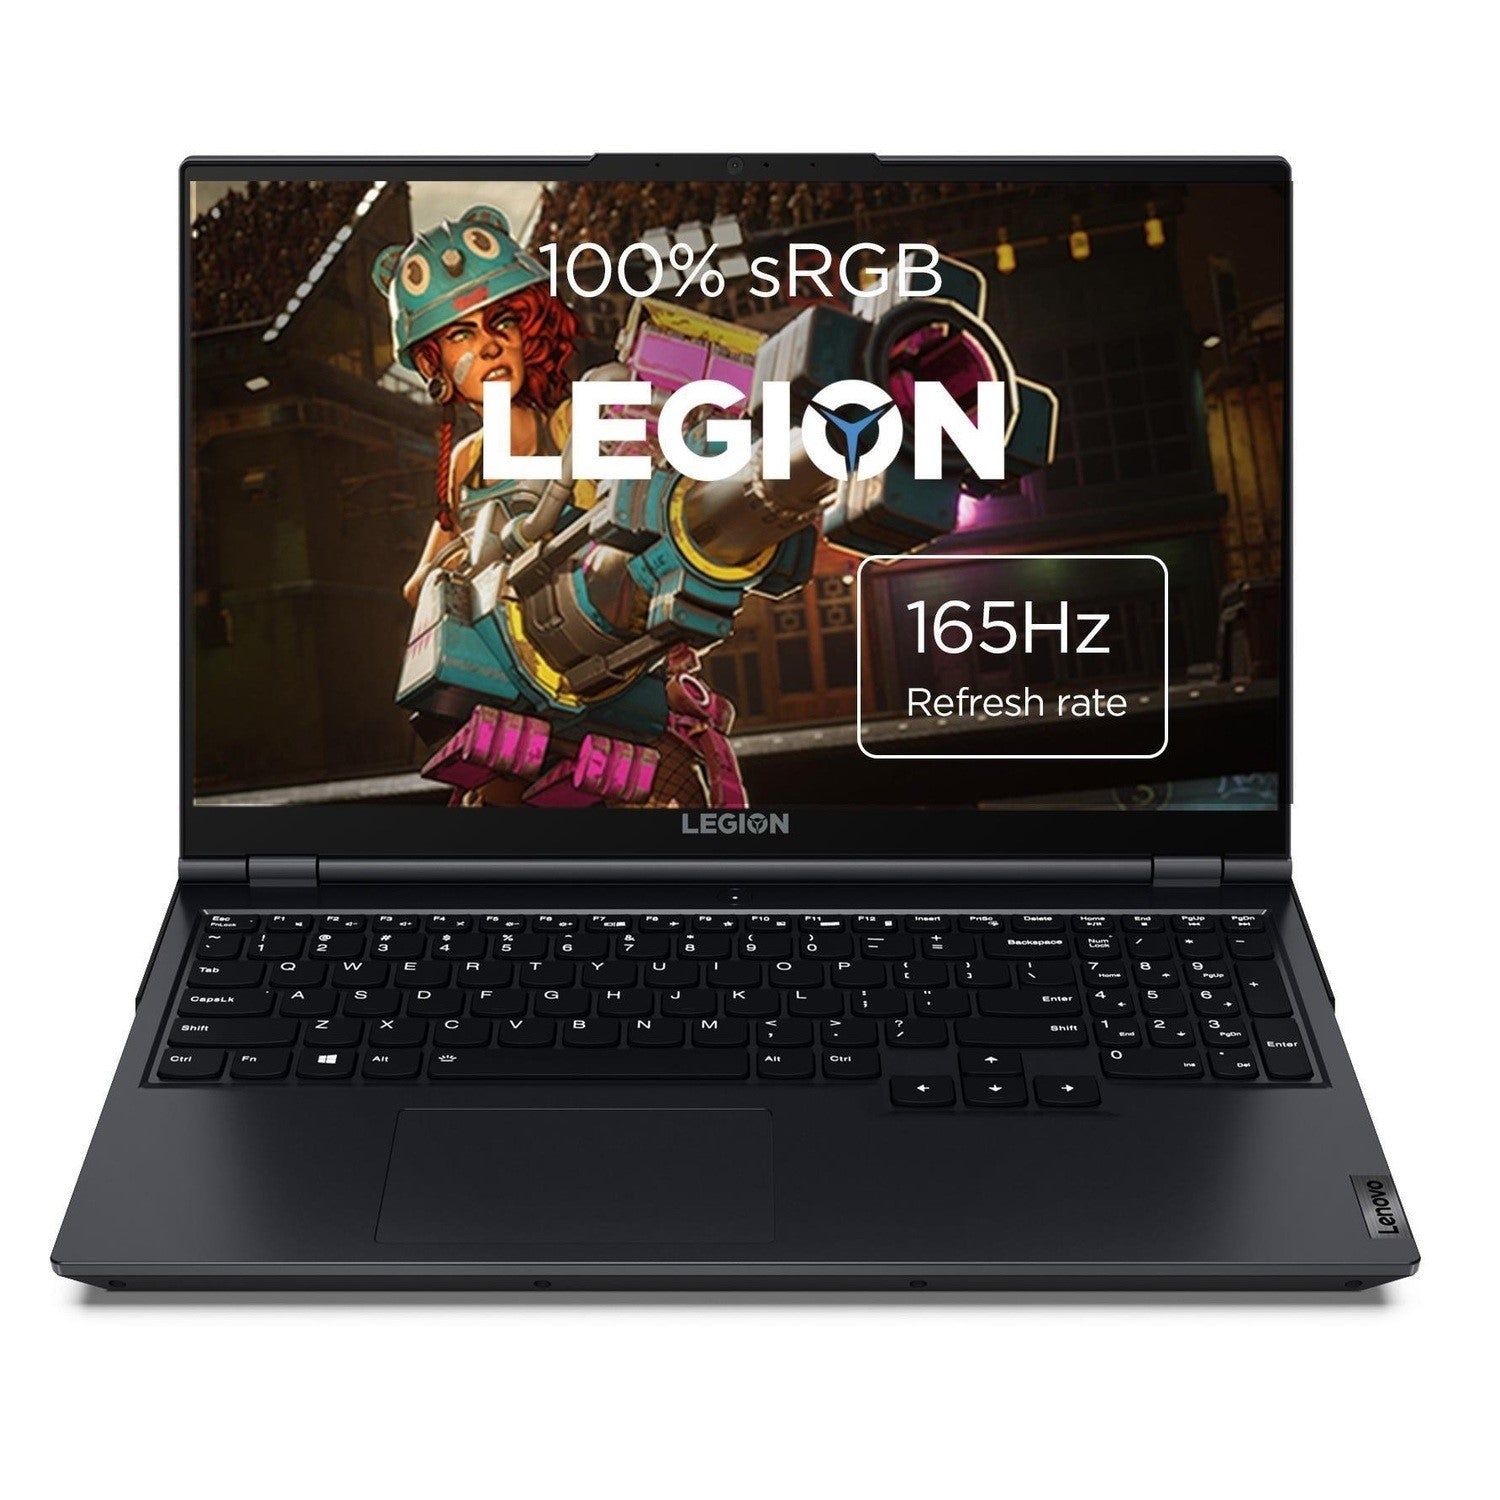 Lenovo Legion 5 15.6" Gaming Laptop, AMD Ryzen 7, 8GB RAM, 512GB SSD, Grey (82JU017VUK)